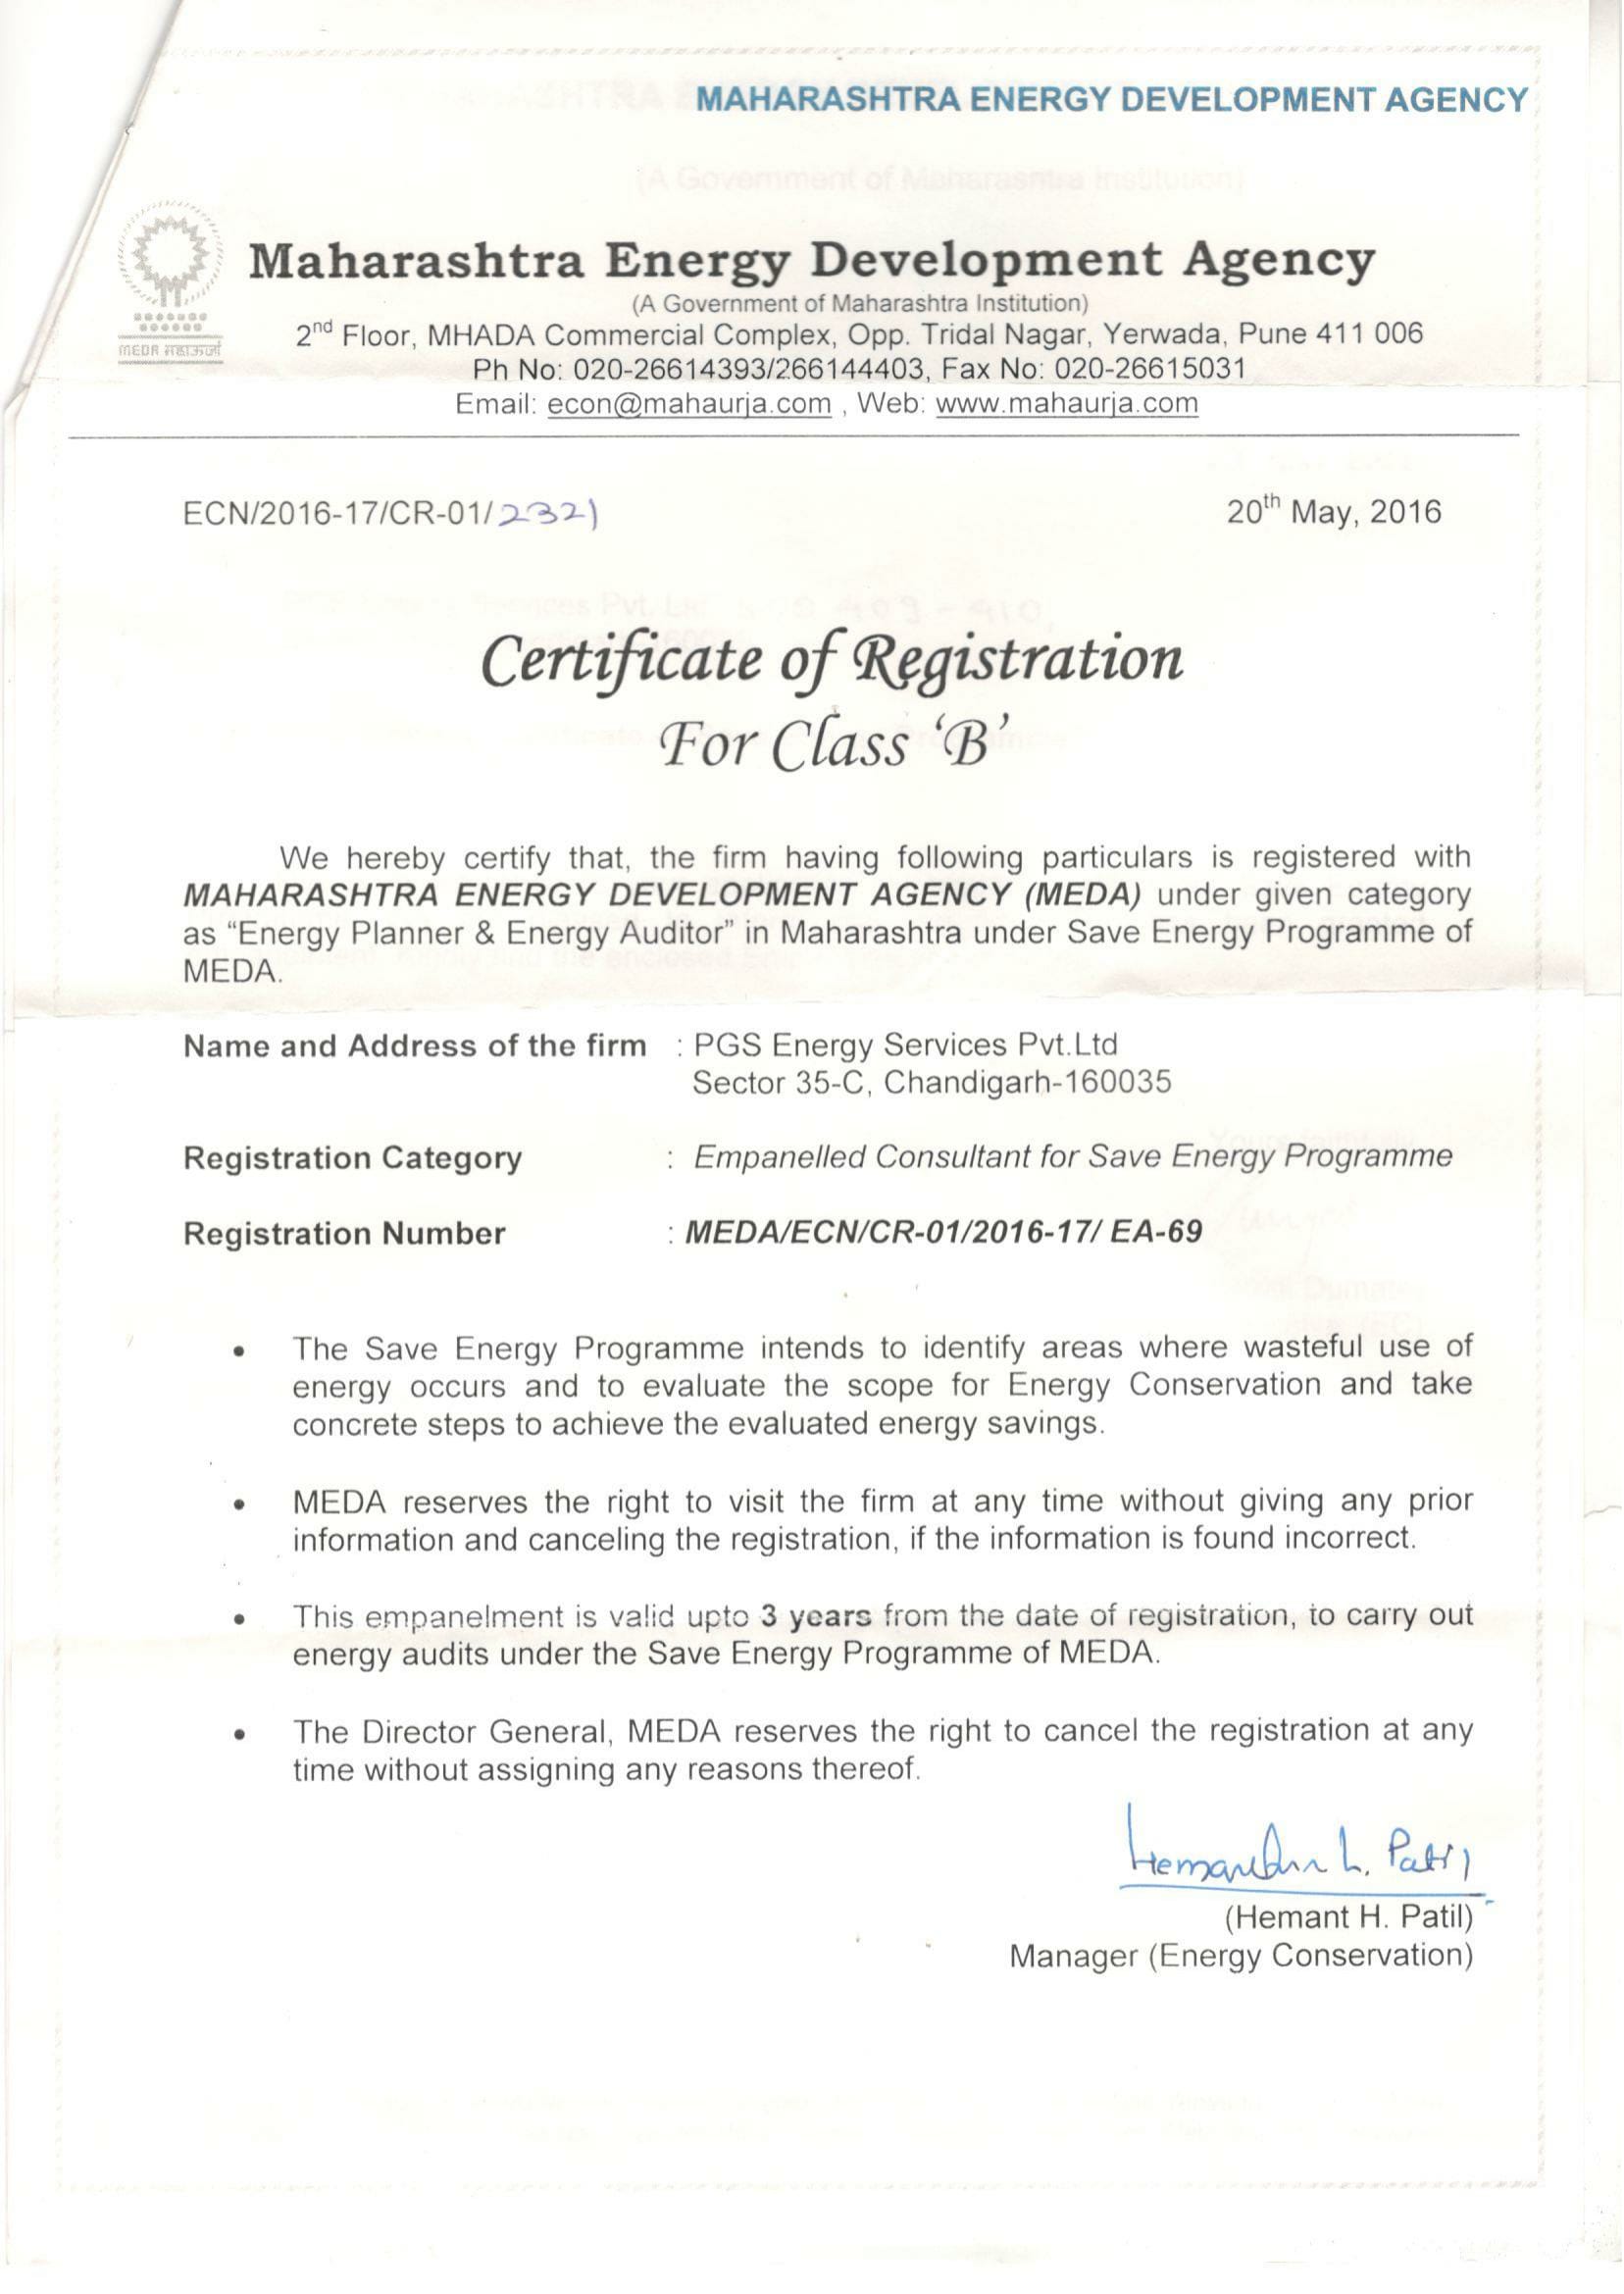 MEDA Certification